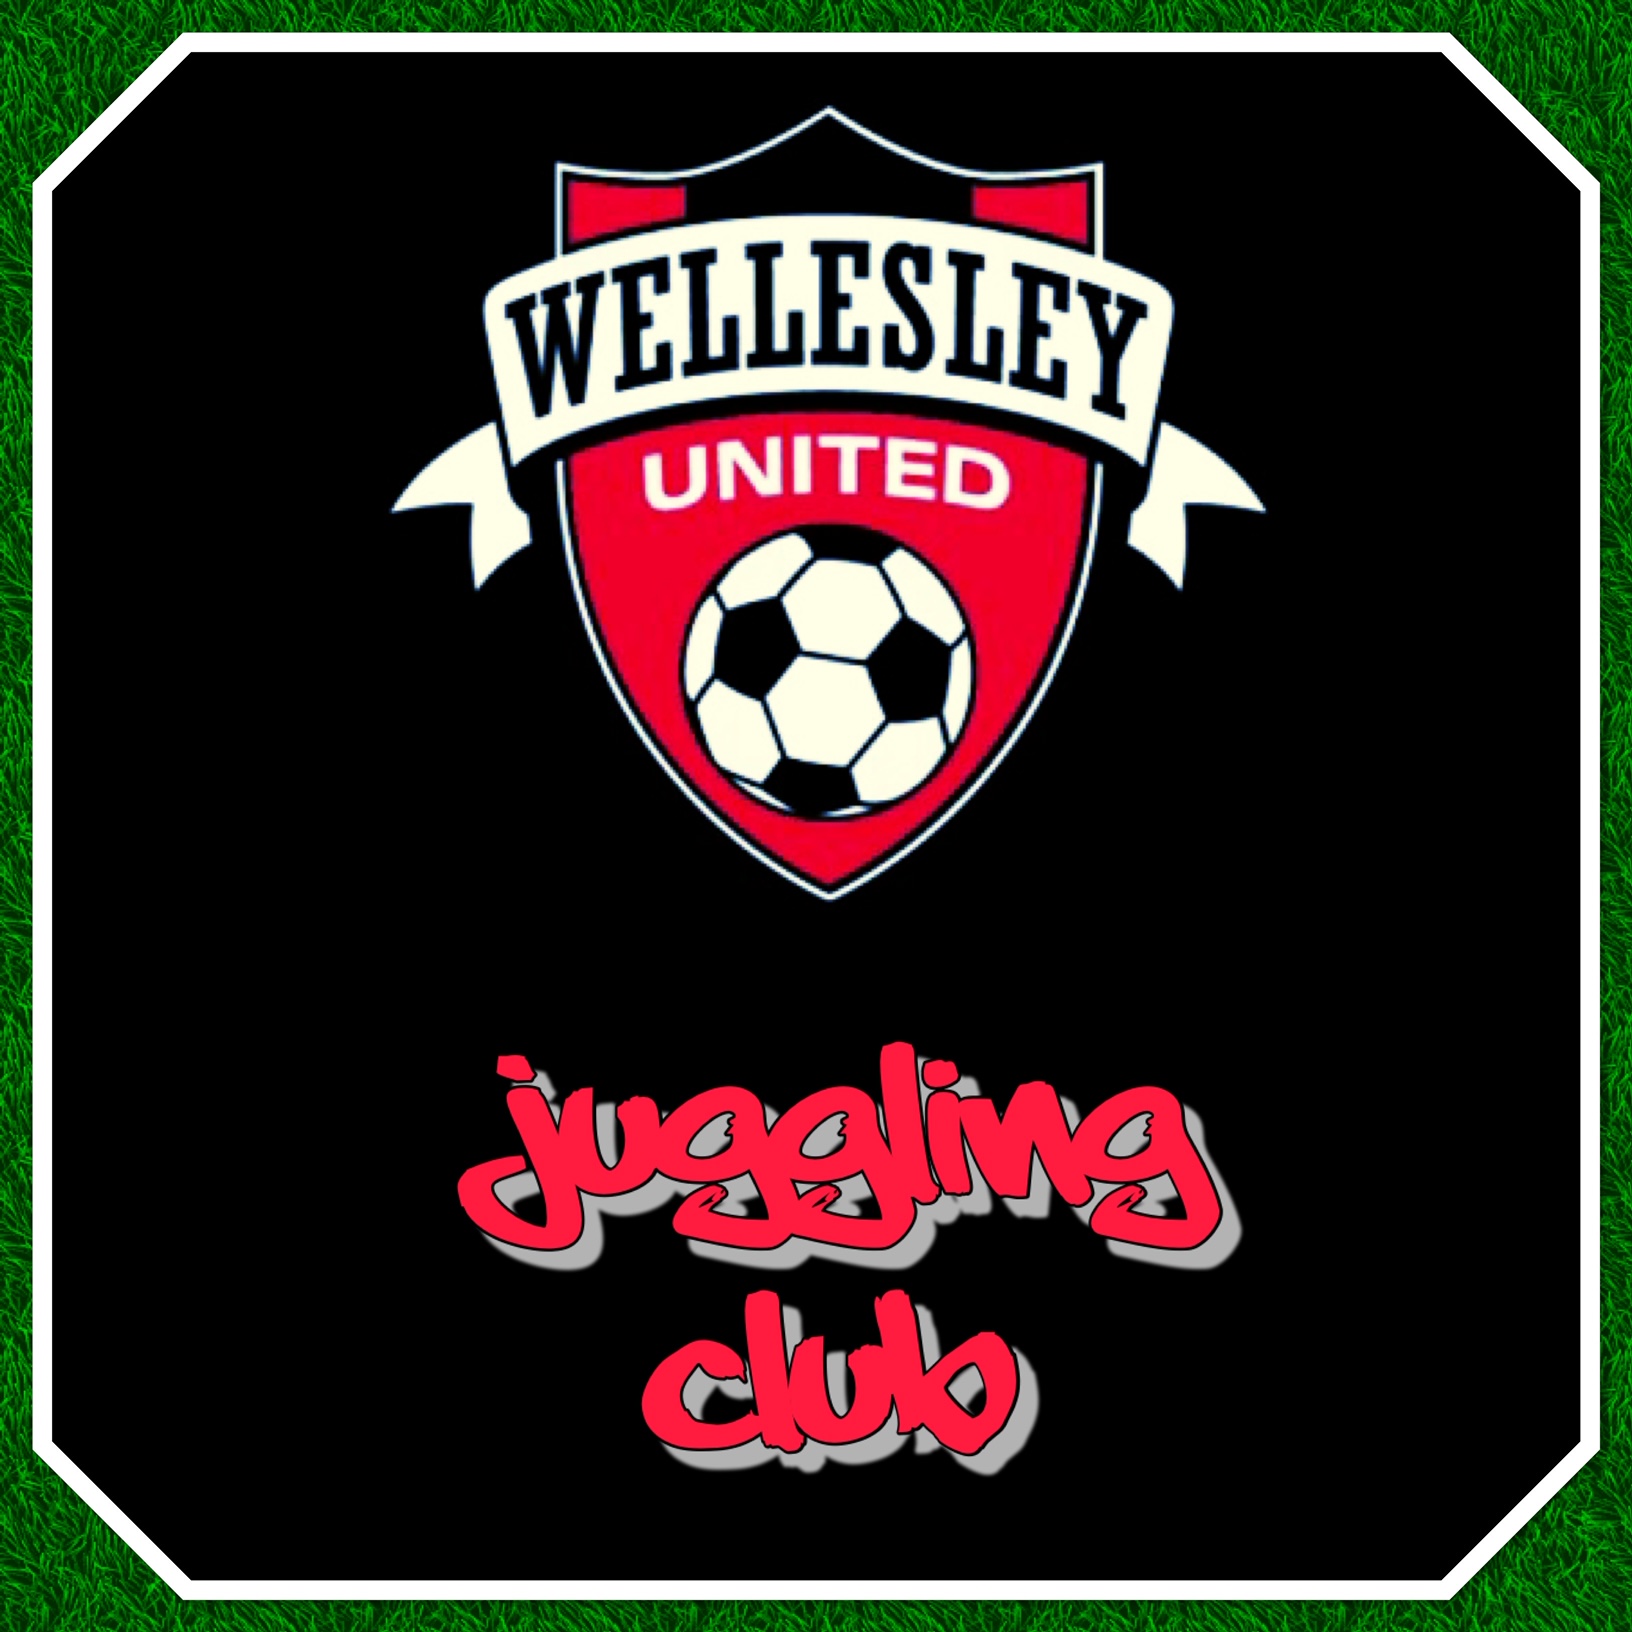 Wellesley United Juggling Club